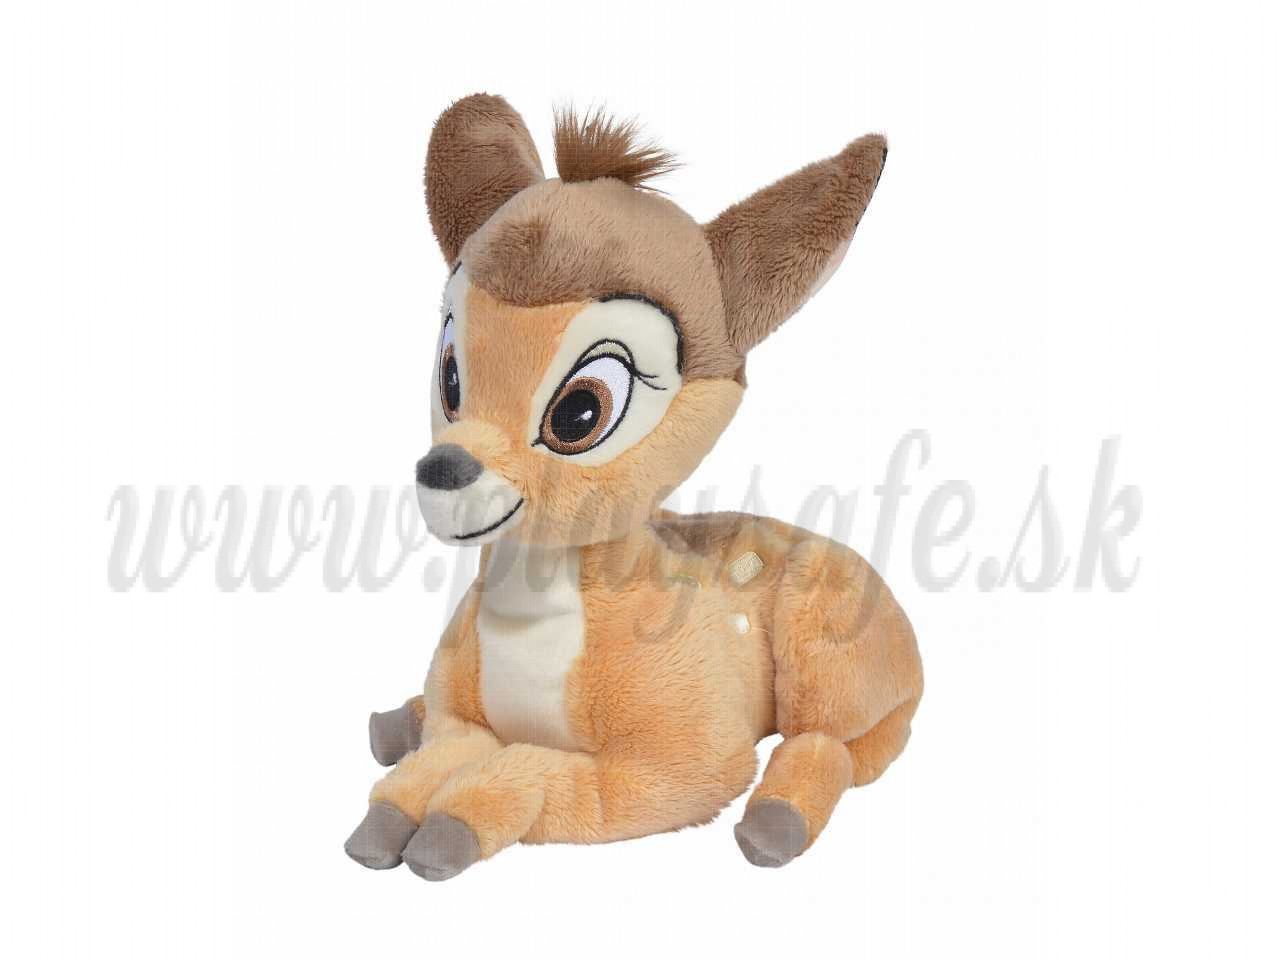 Simba Dickie Plyšová hračka Disney Bambi, 25cm